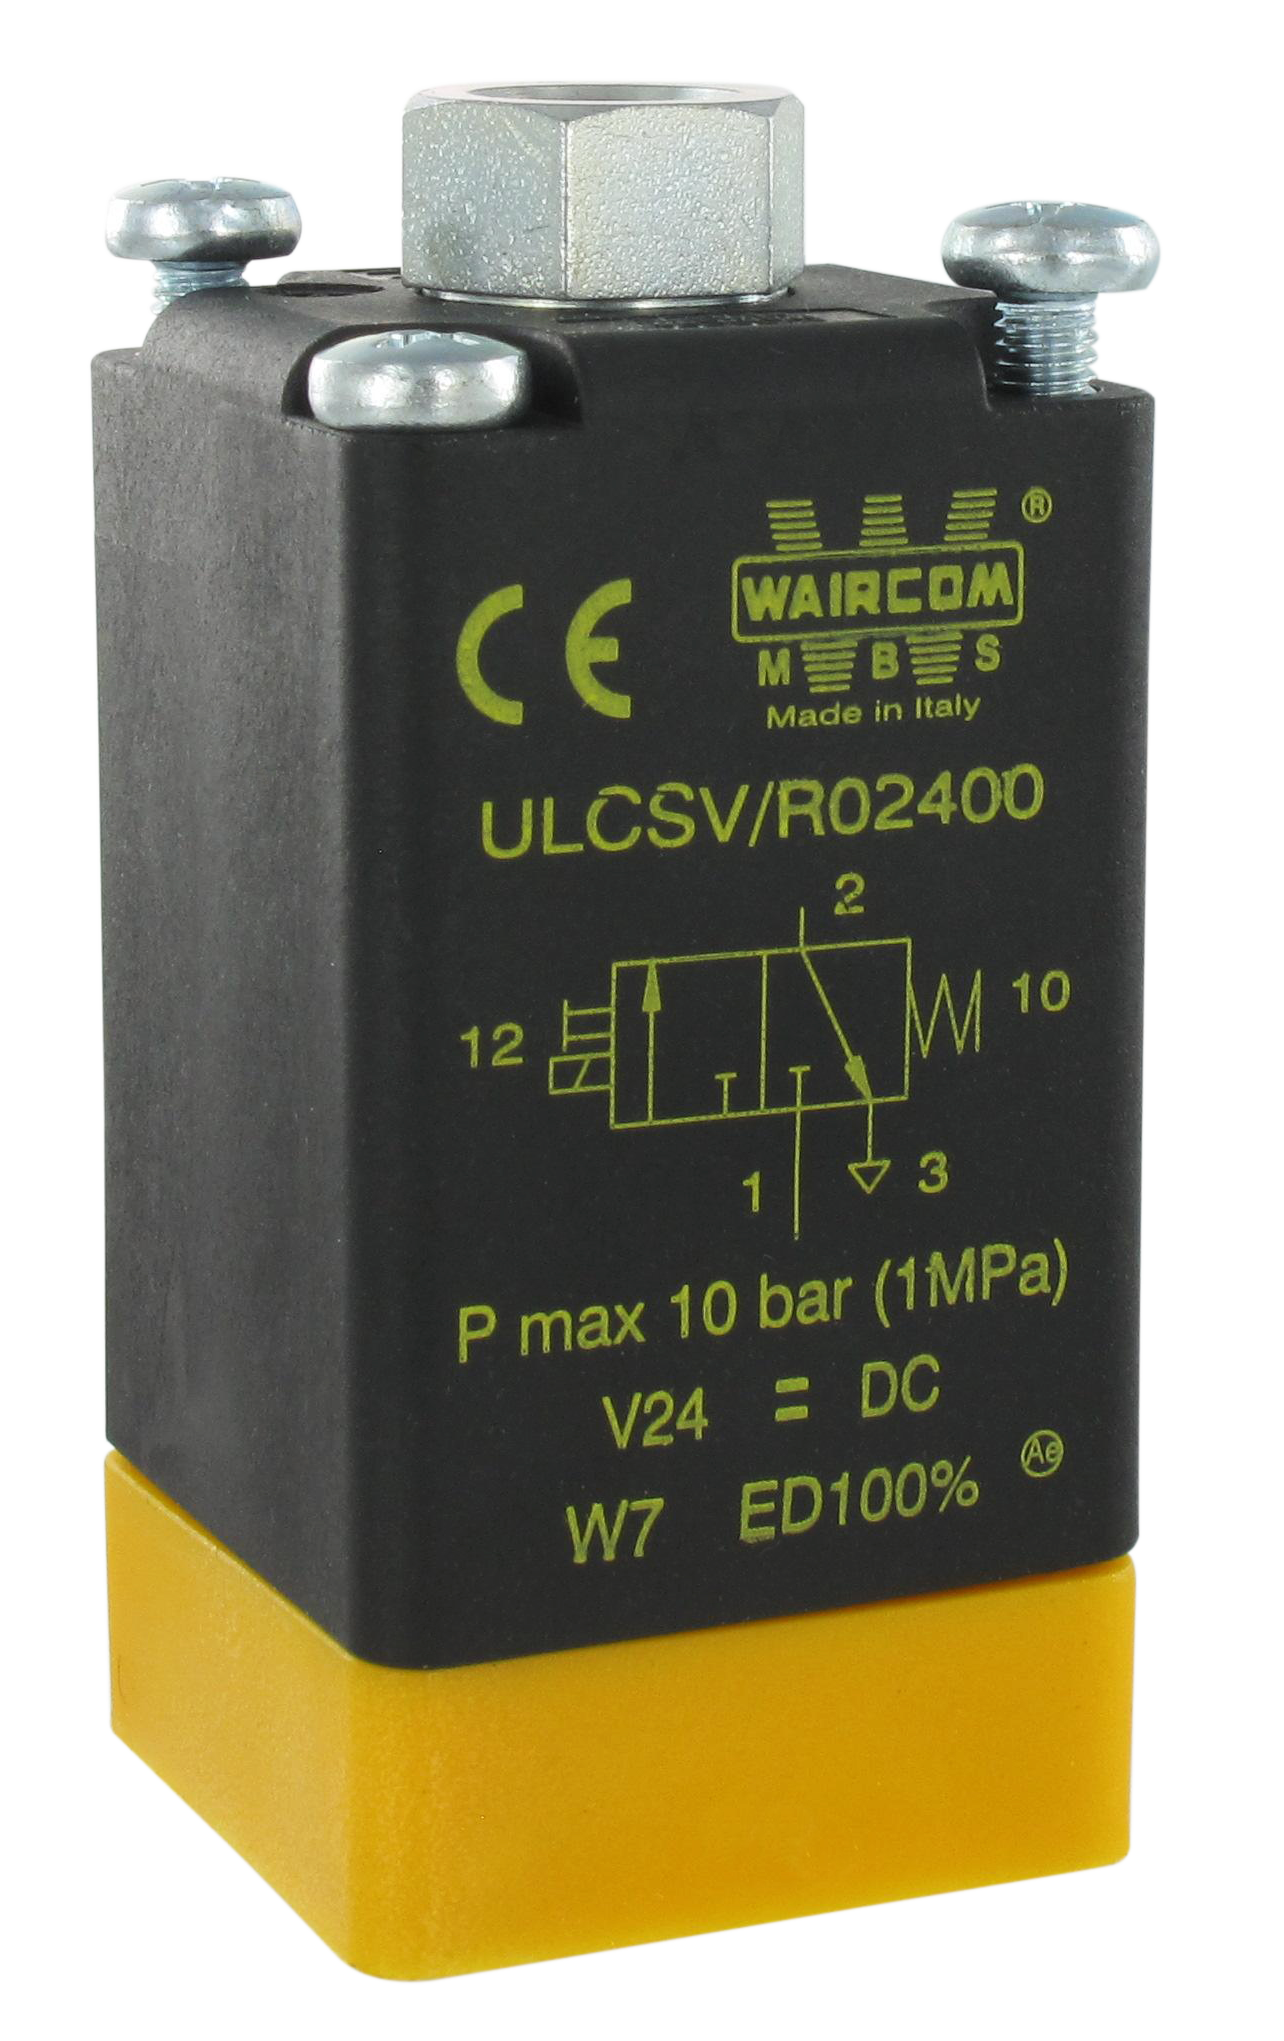 Electro-distributeur pneumatique 3/2 NF monostable 12 VAC cde manuelle bistable UL - Electro-distributeurs à commande directe